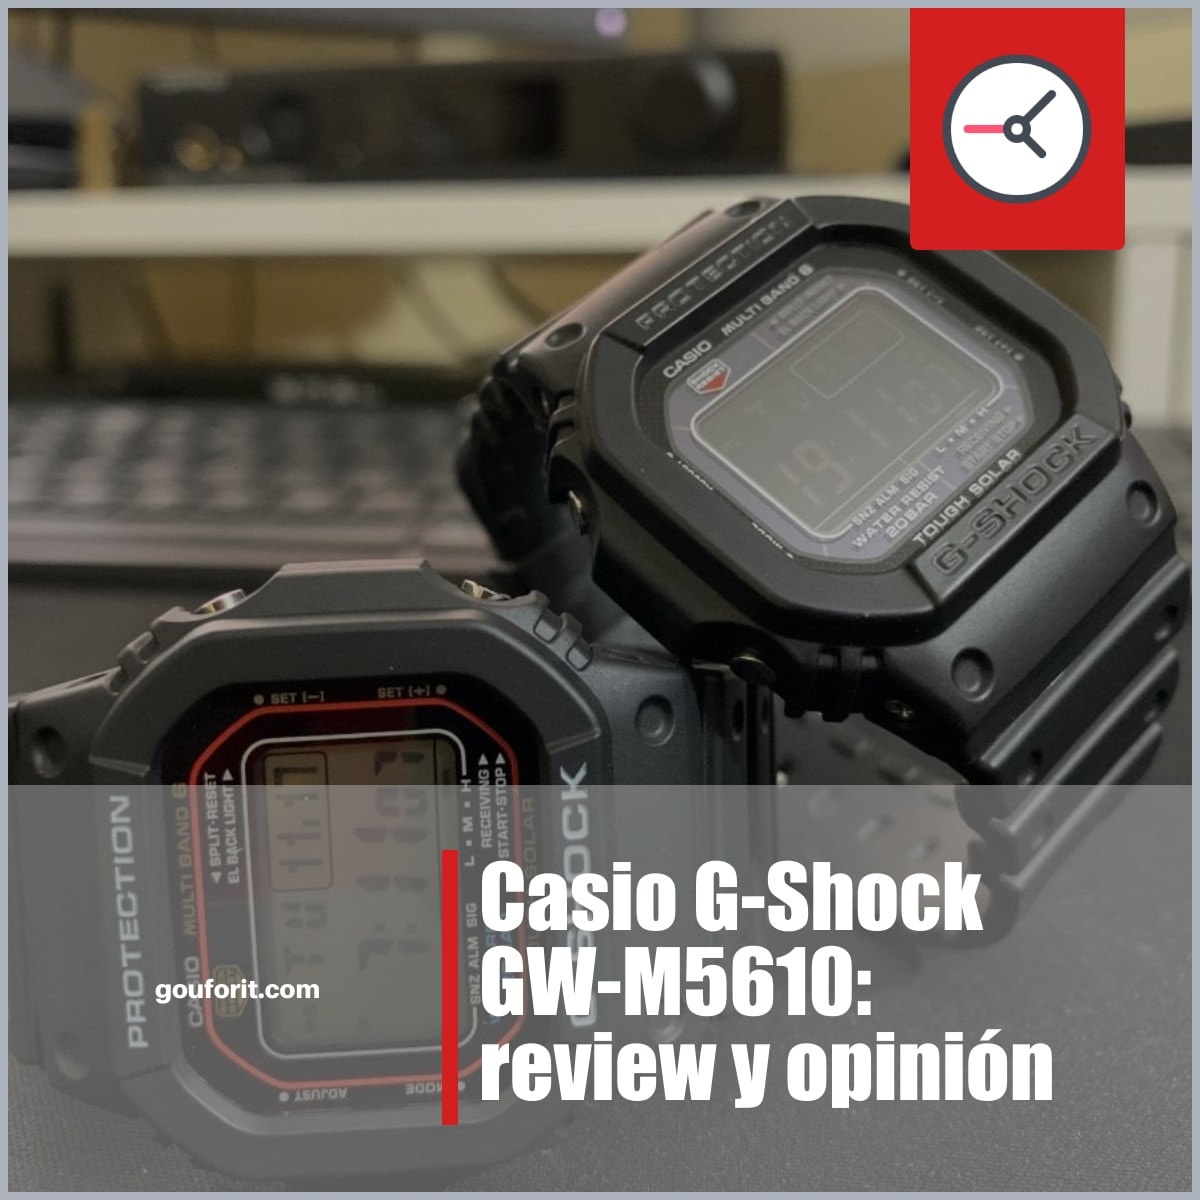 Casio G-Shock GW-M5610: review y opinión